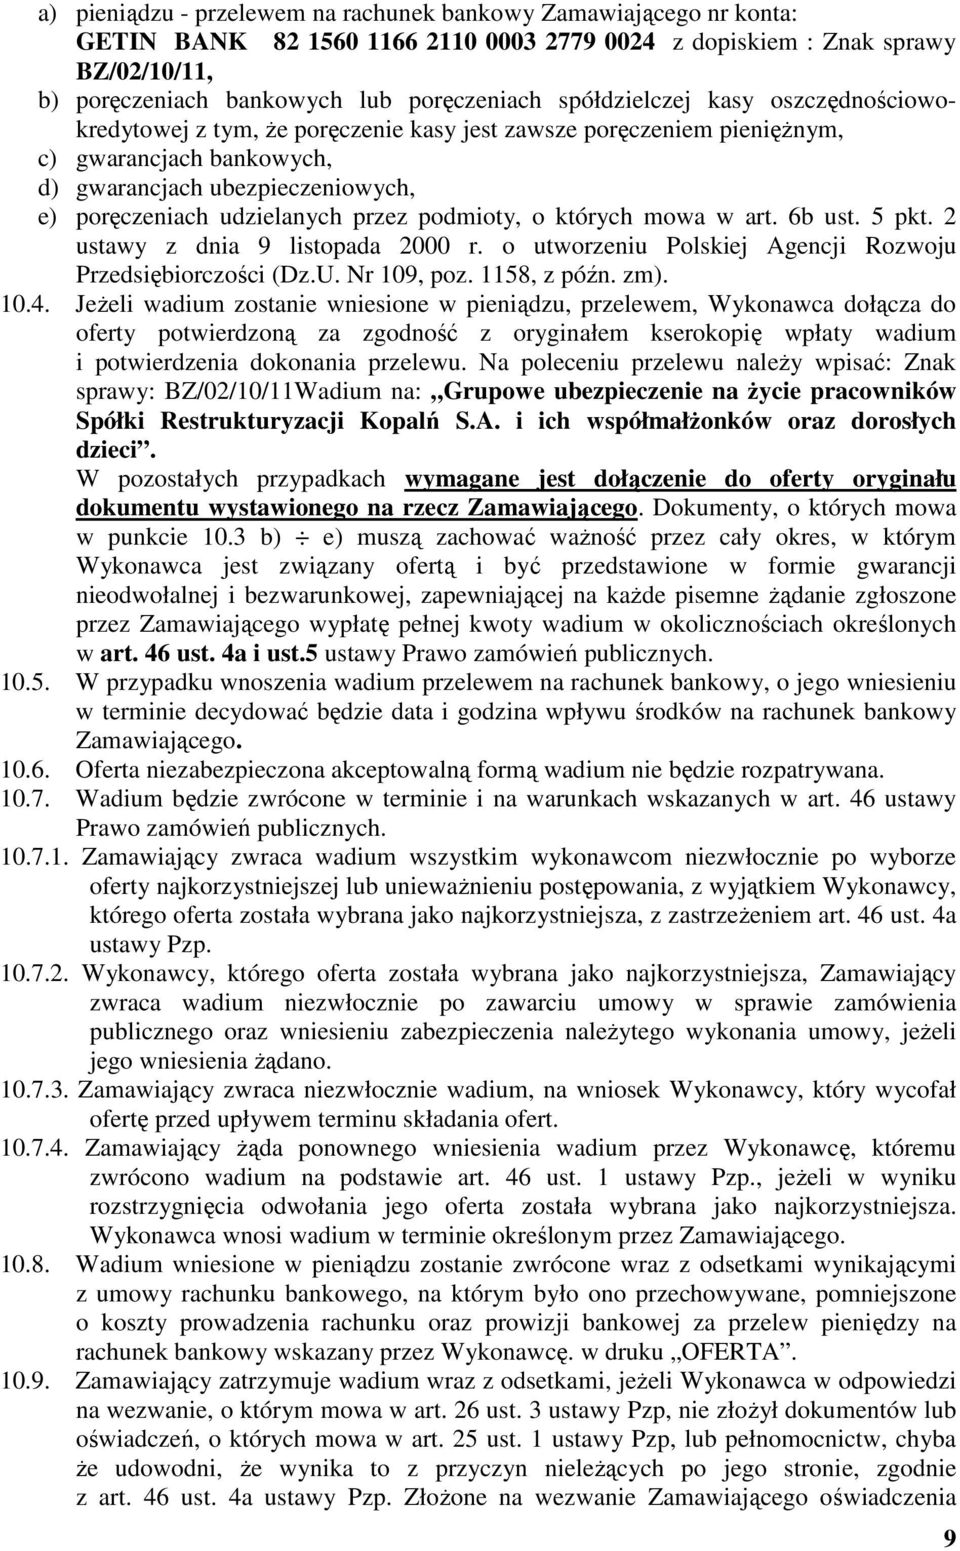 przez podmioty, o których mowa w art. 6b ust. 5 pkt. 2 ustawy z dnia 9 listopada 2000 r. o utworzeniu Polskiej Agencji Rozwoju Przedsiębiorczości (Dz.U. Nr 109, poz. 1158, z późn. zm). 10.4.